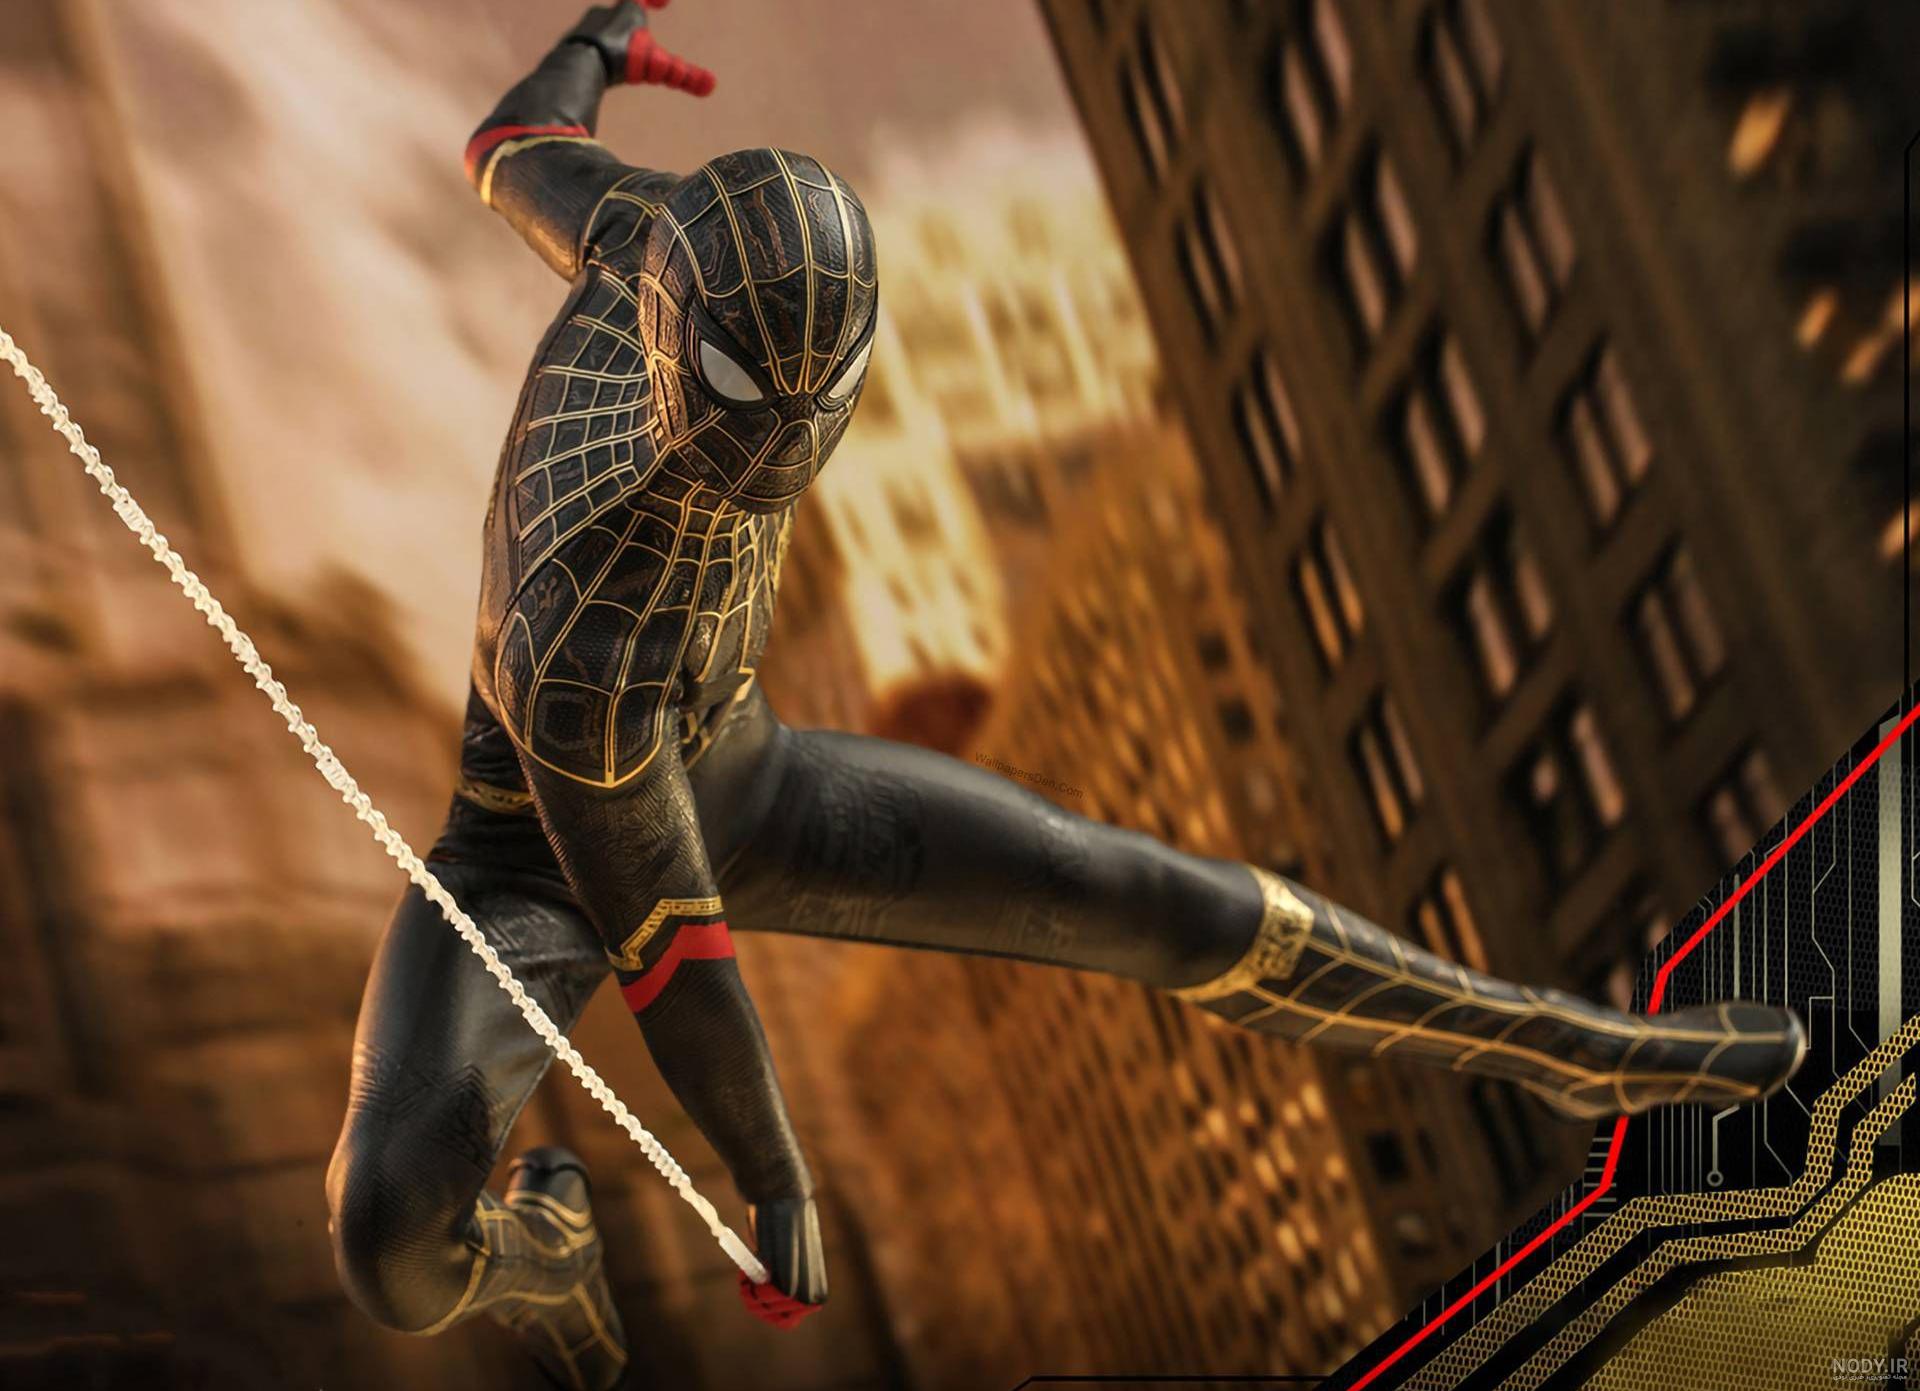 25 عکس مرد عنکبوتی با کیفیت برای پس زمینه